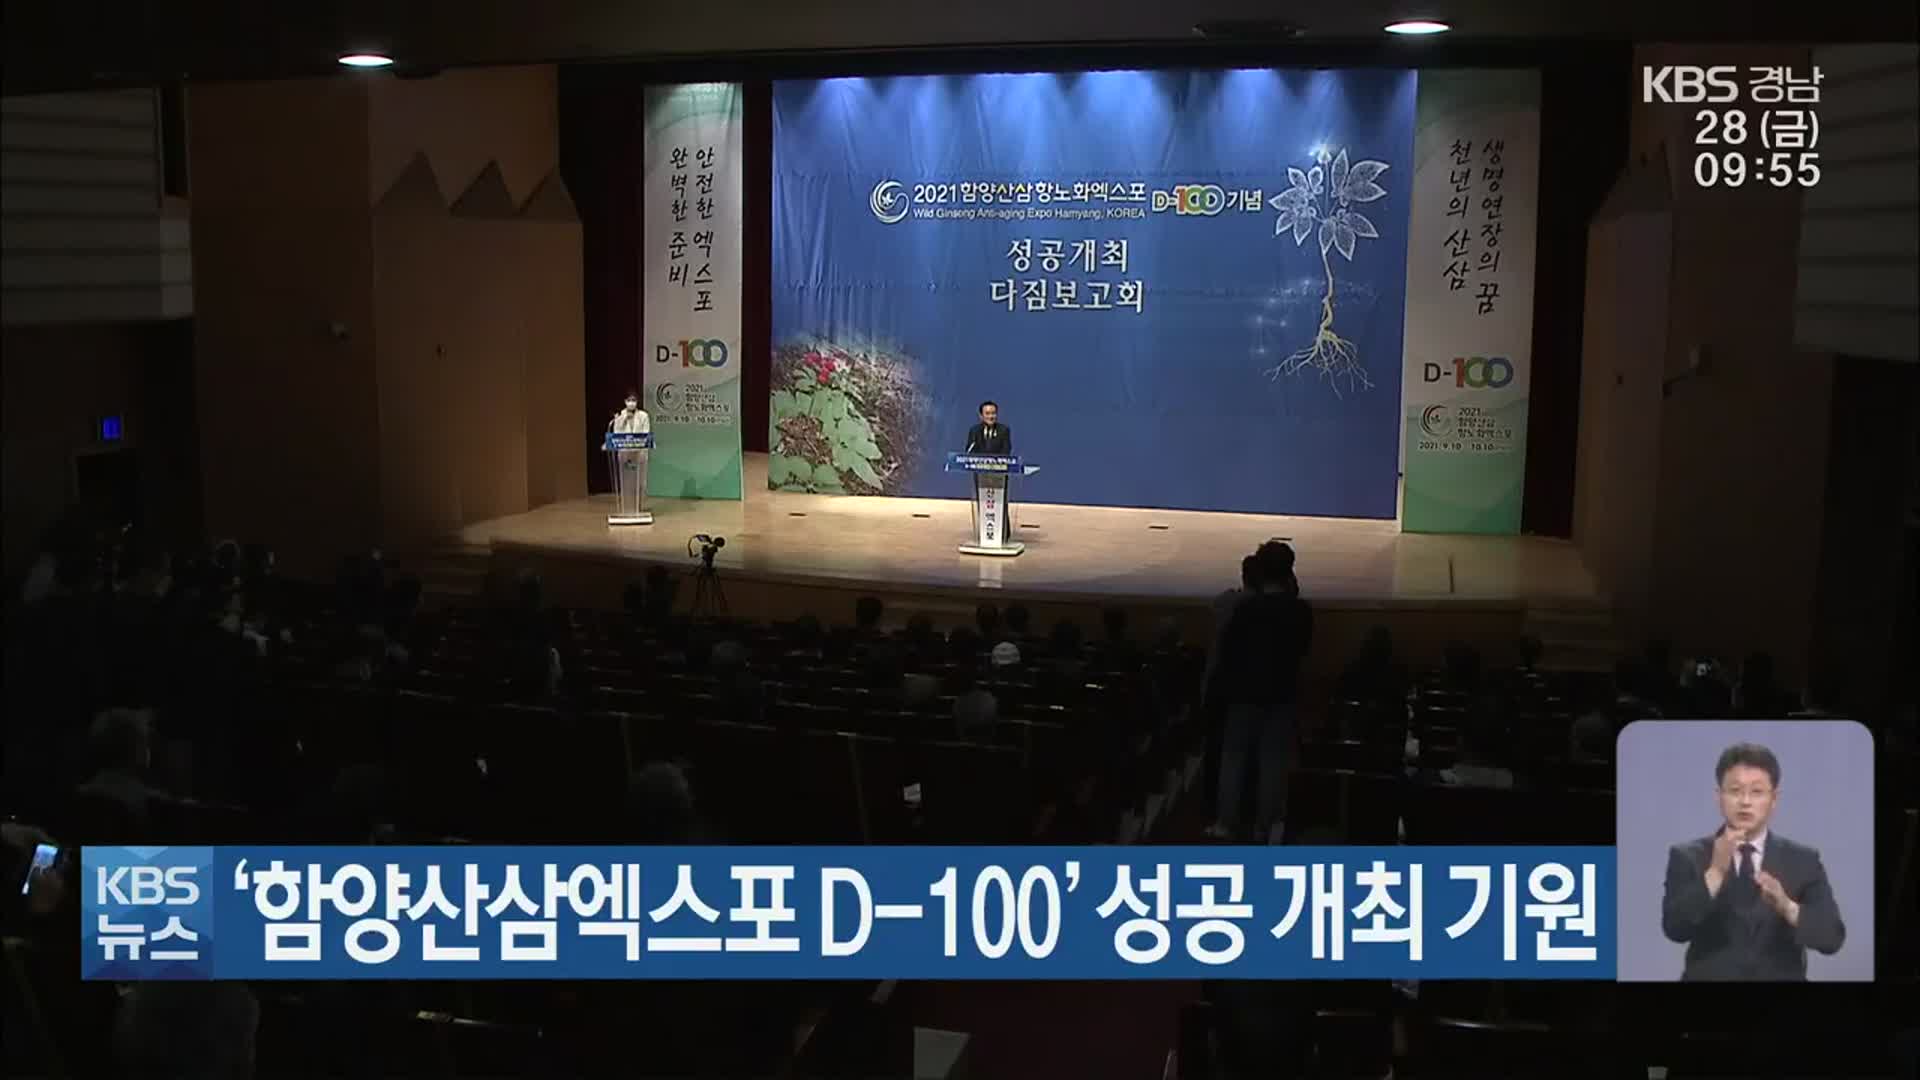 ‘함양산삼엑스포 D-100’ 성공 개최 기원